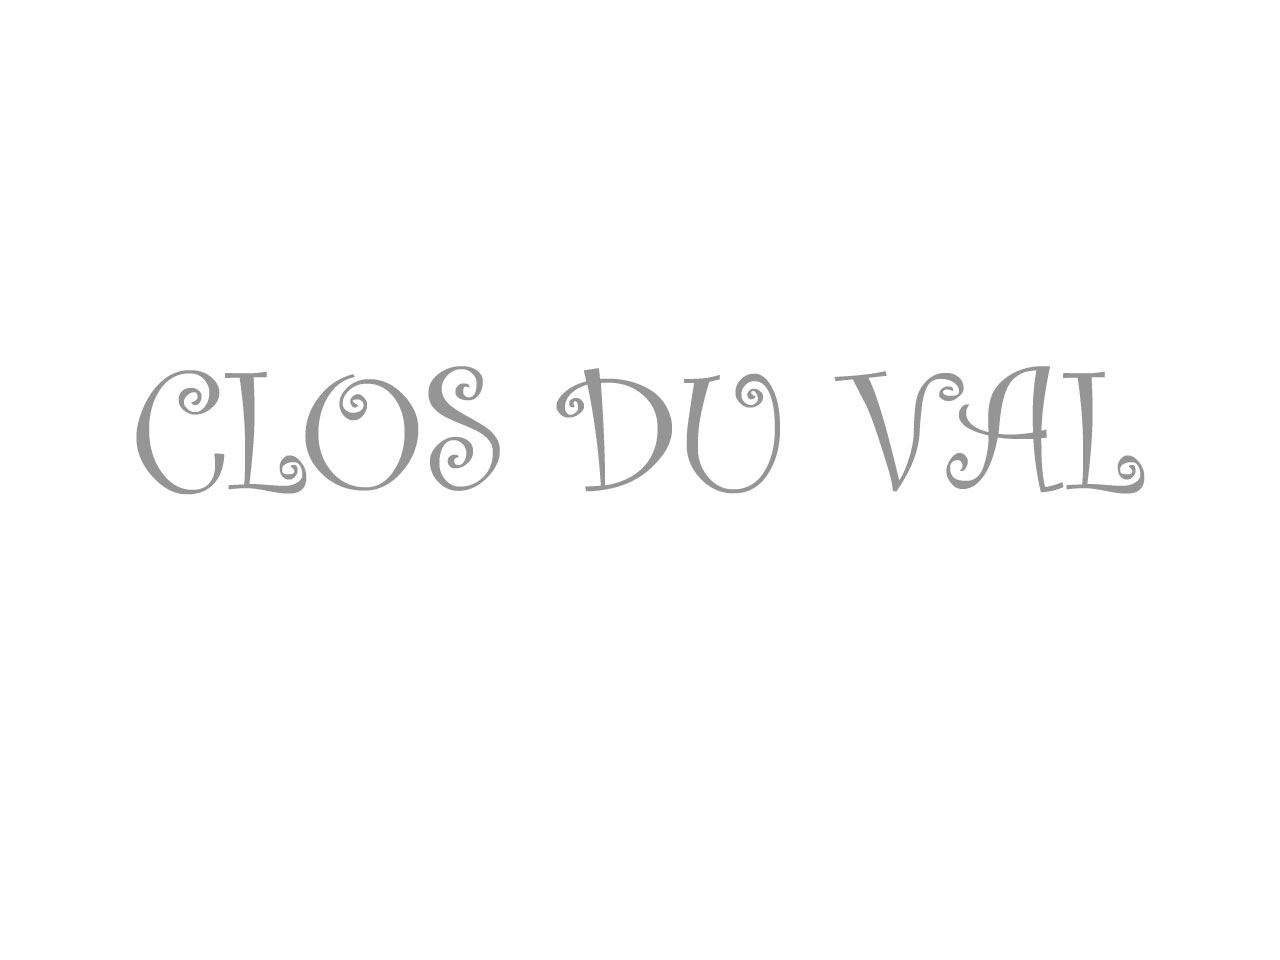 Clos du Val